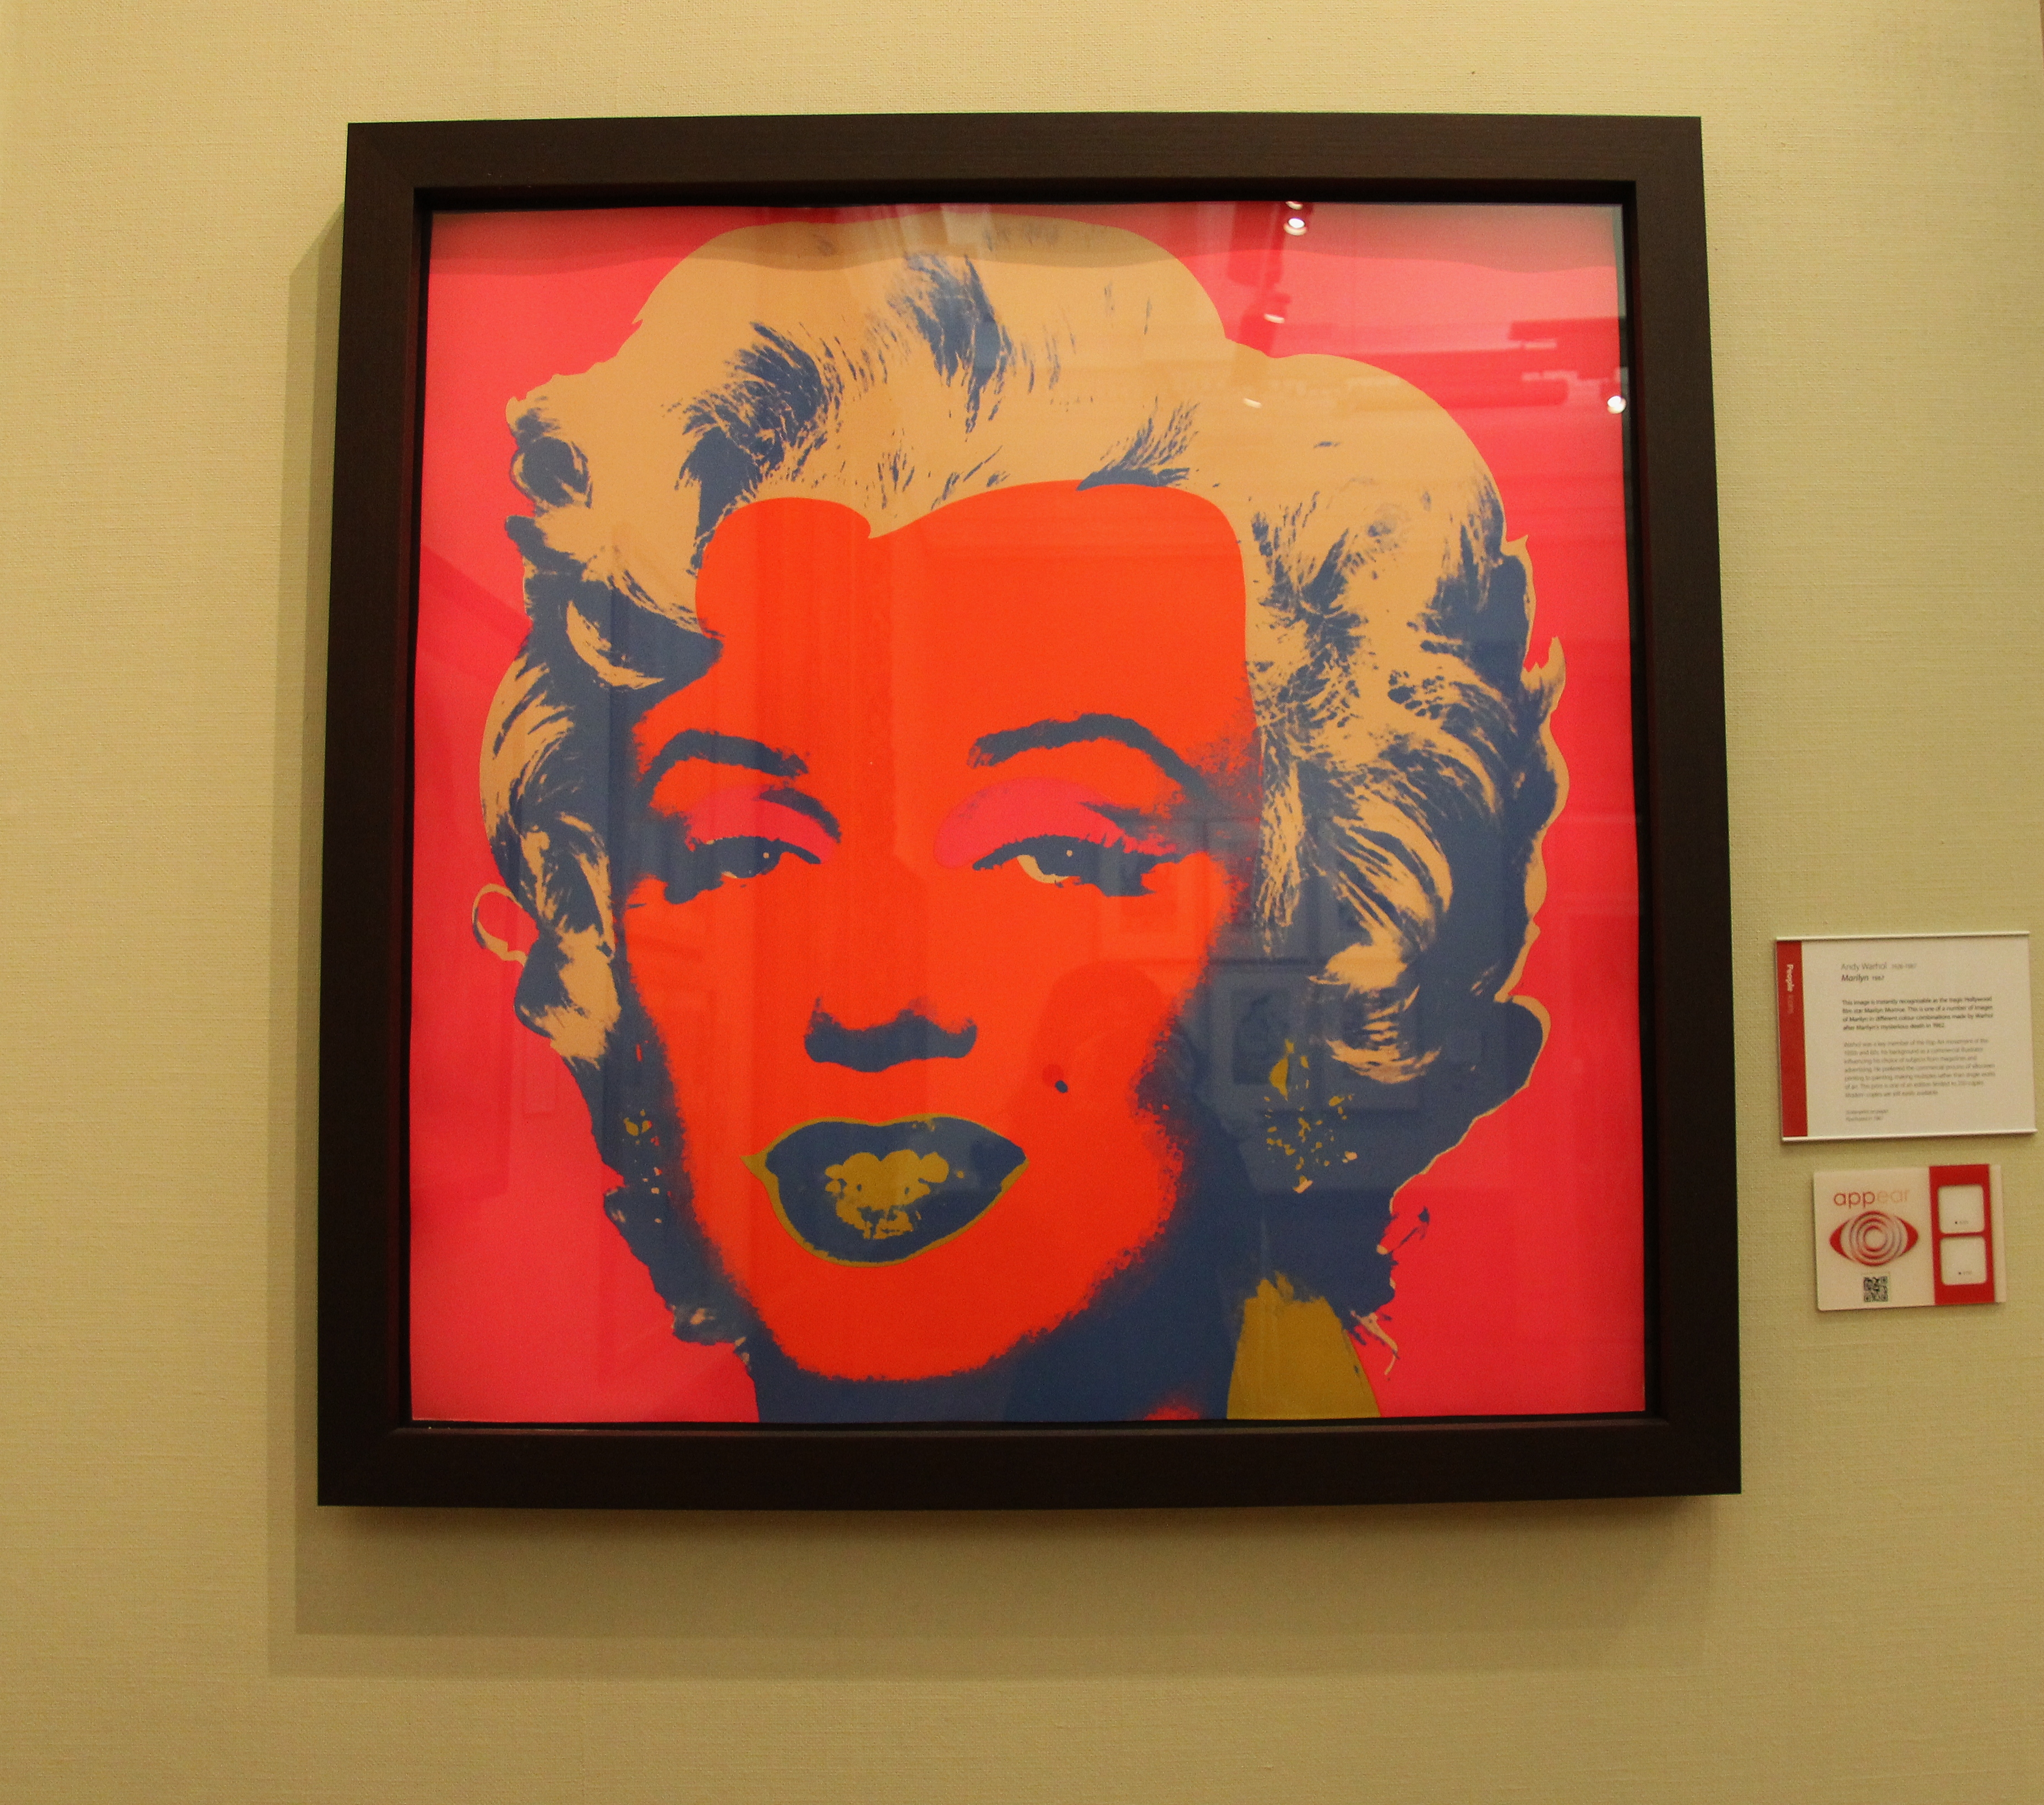 Andy Warhol, Marilyn Monroe, UK, art museum